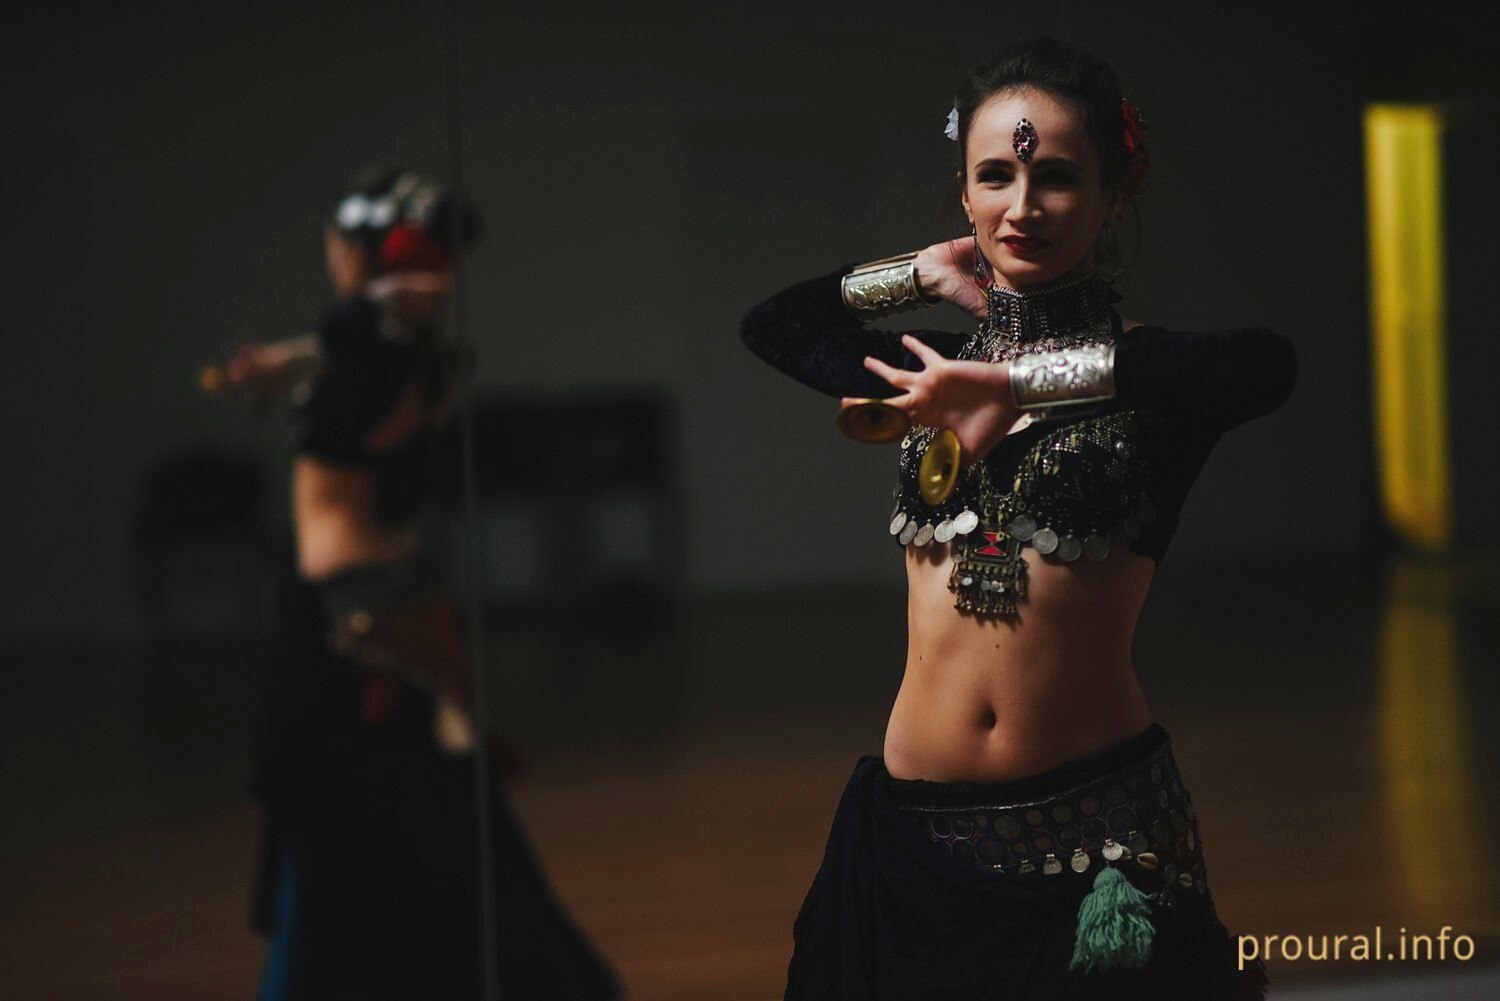 «Танец женской силы и независимости»: фоторепортаж о новом увлечении уфимок